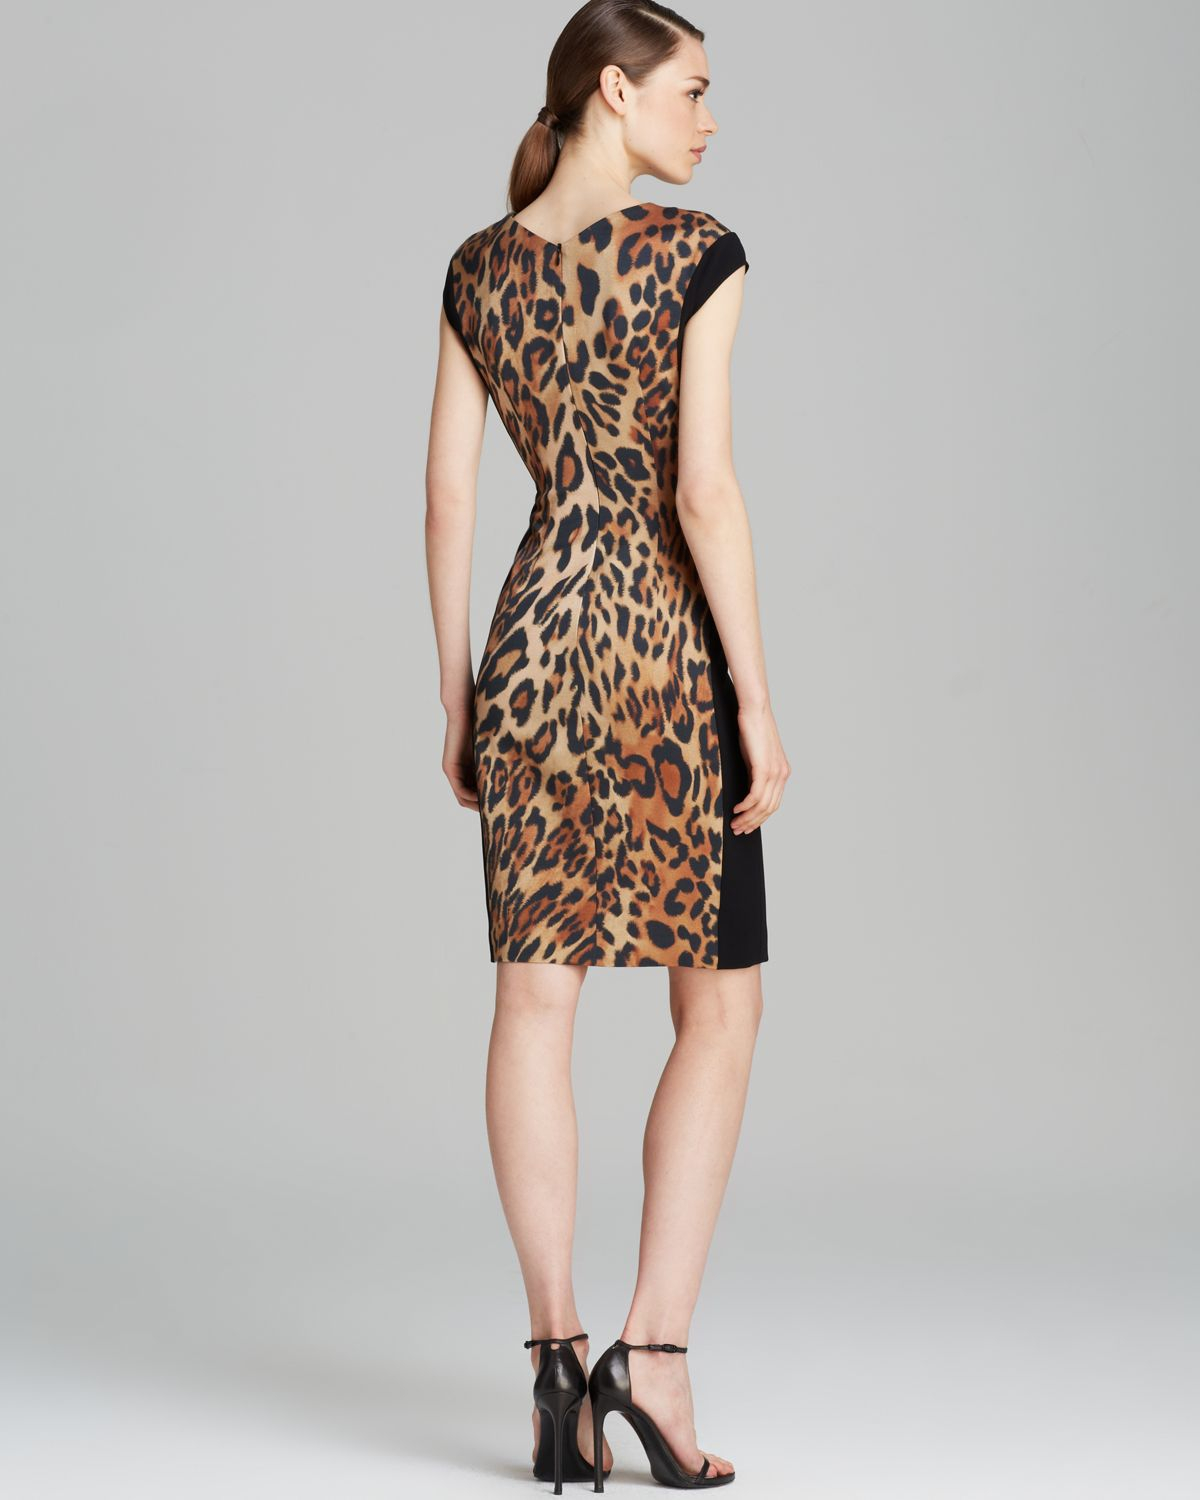 Lyst - Escada Dress - Cap Sleeve Leopard Print